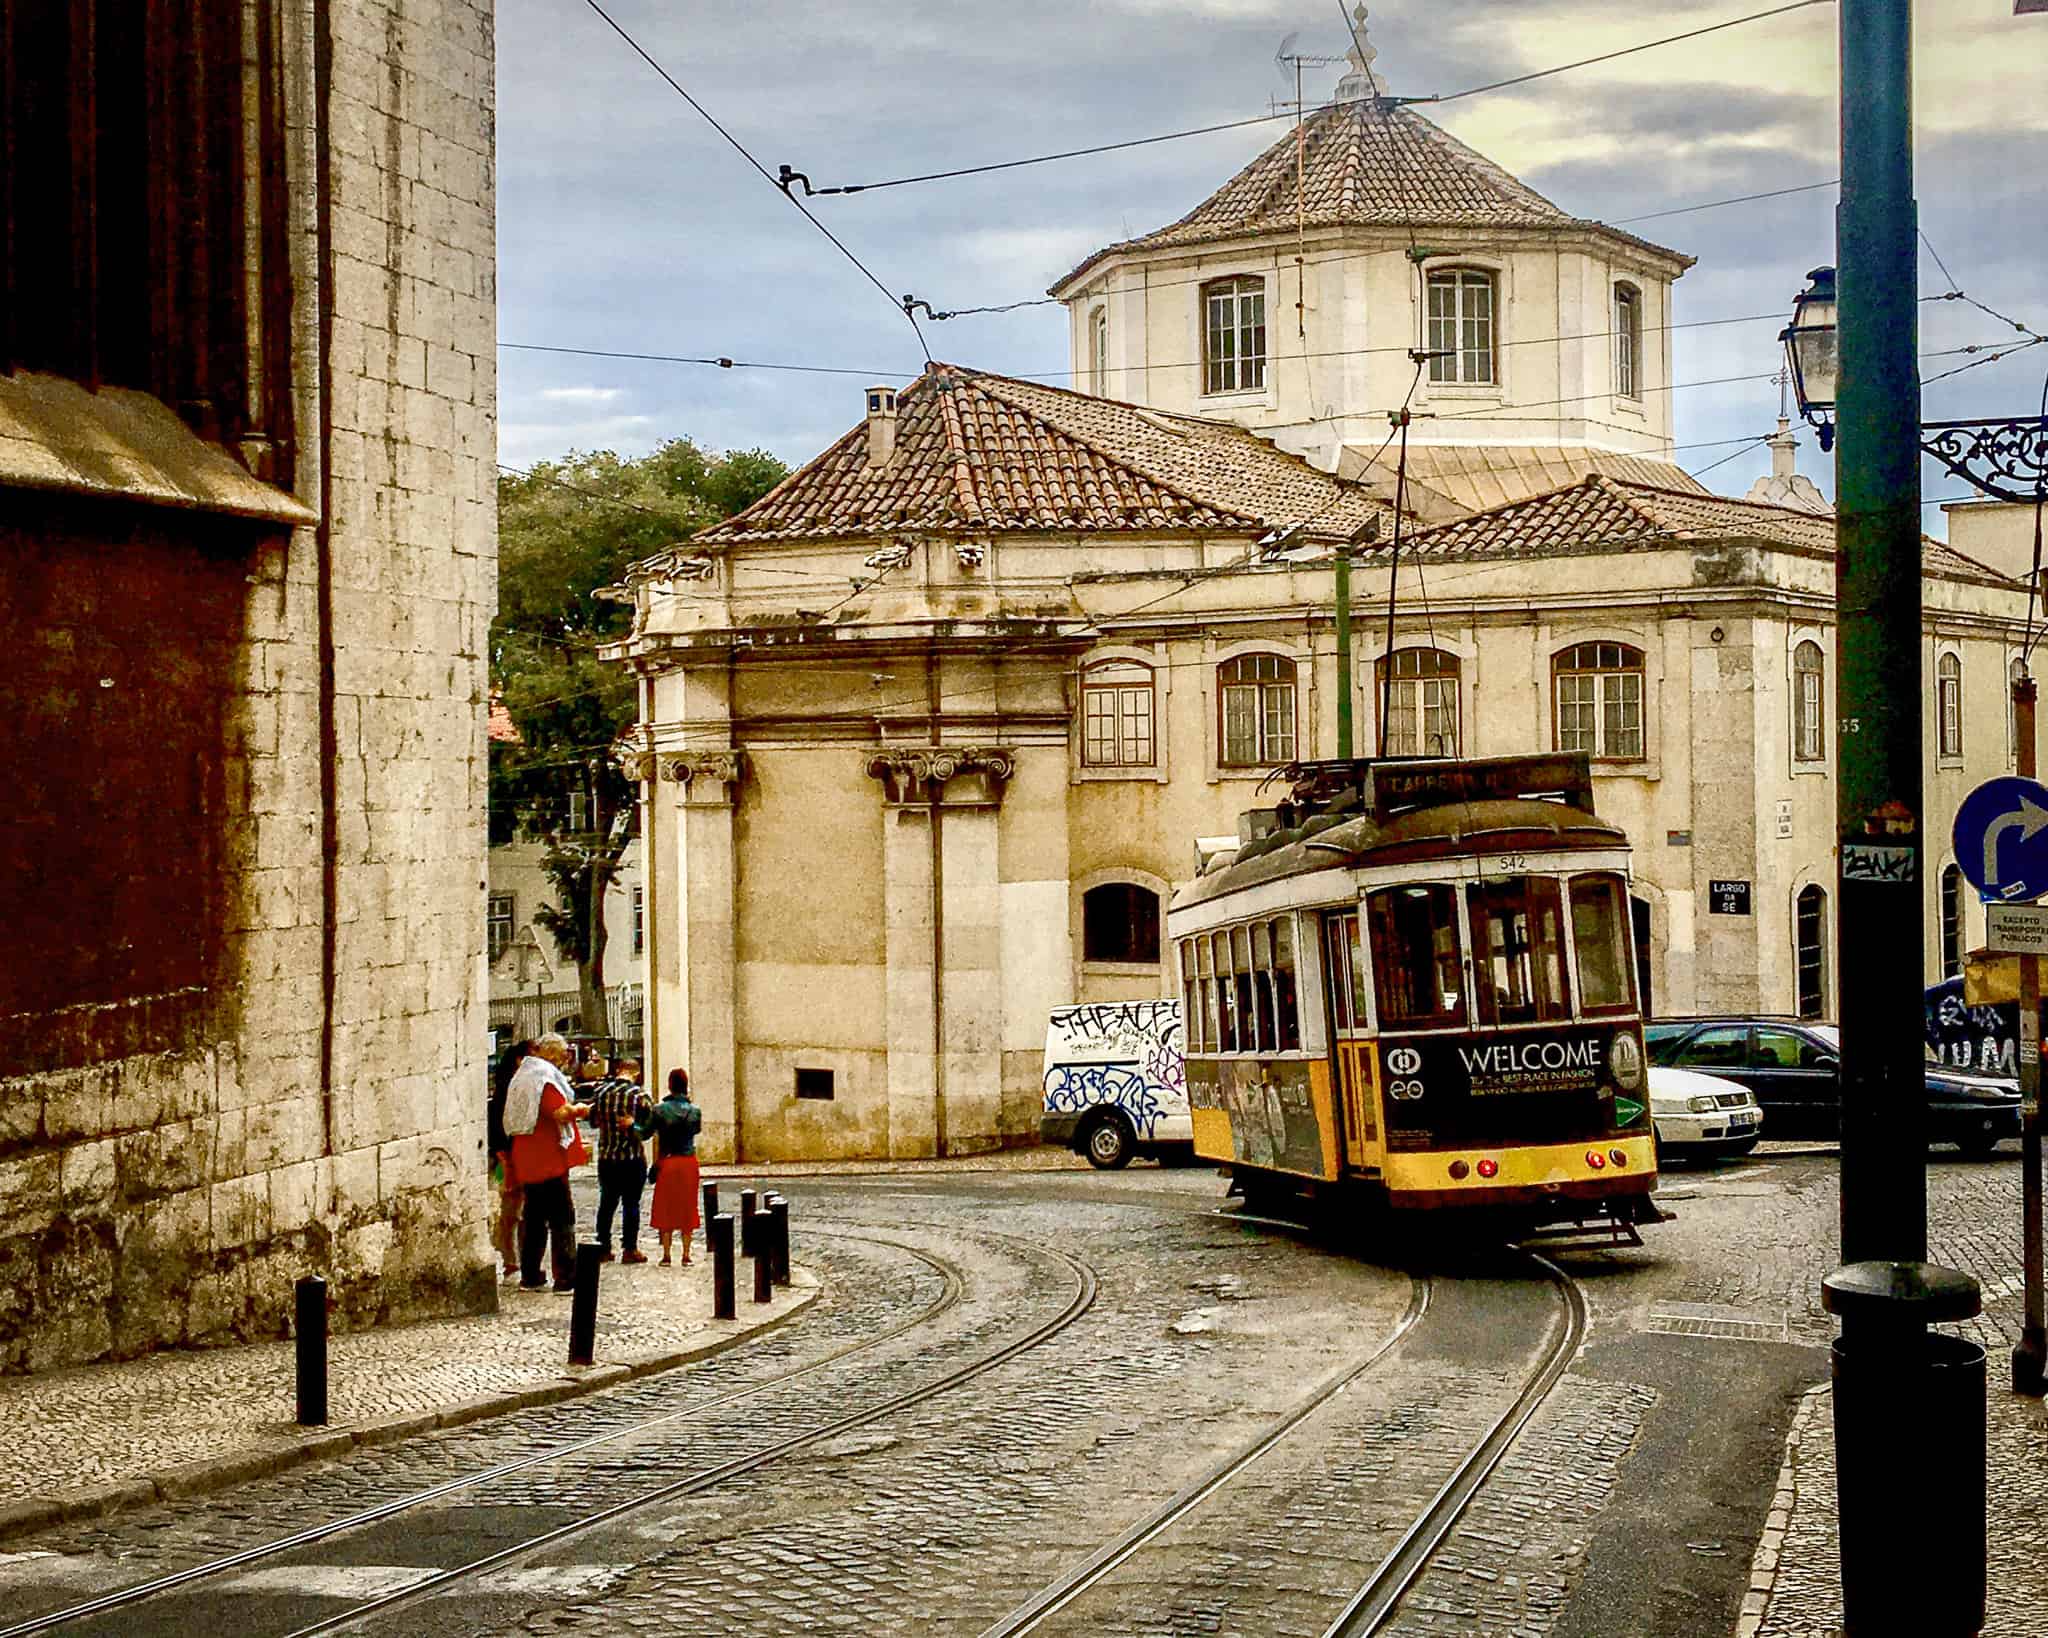 A streetcar rolls by in Lisbon, Portugal.